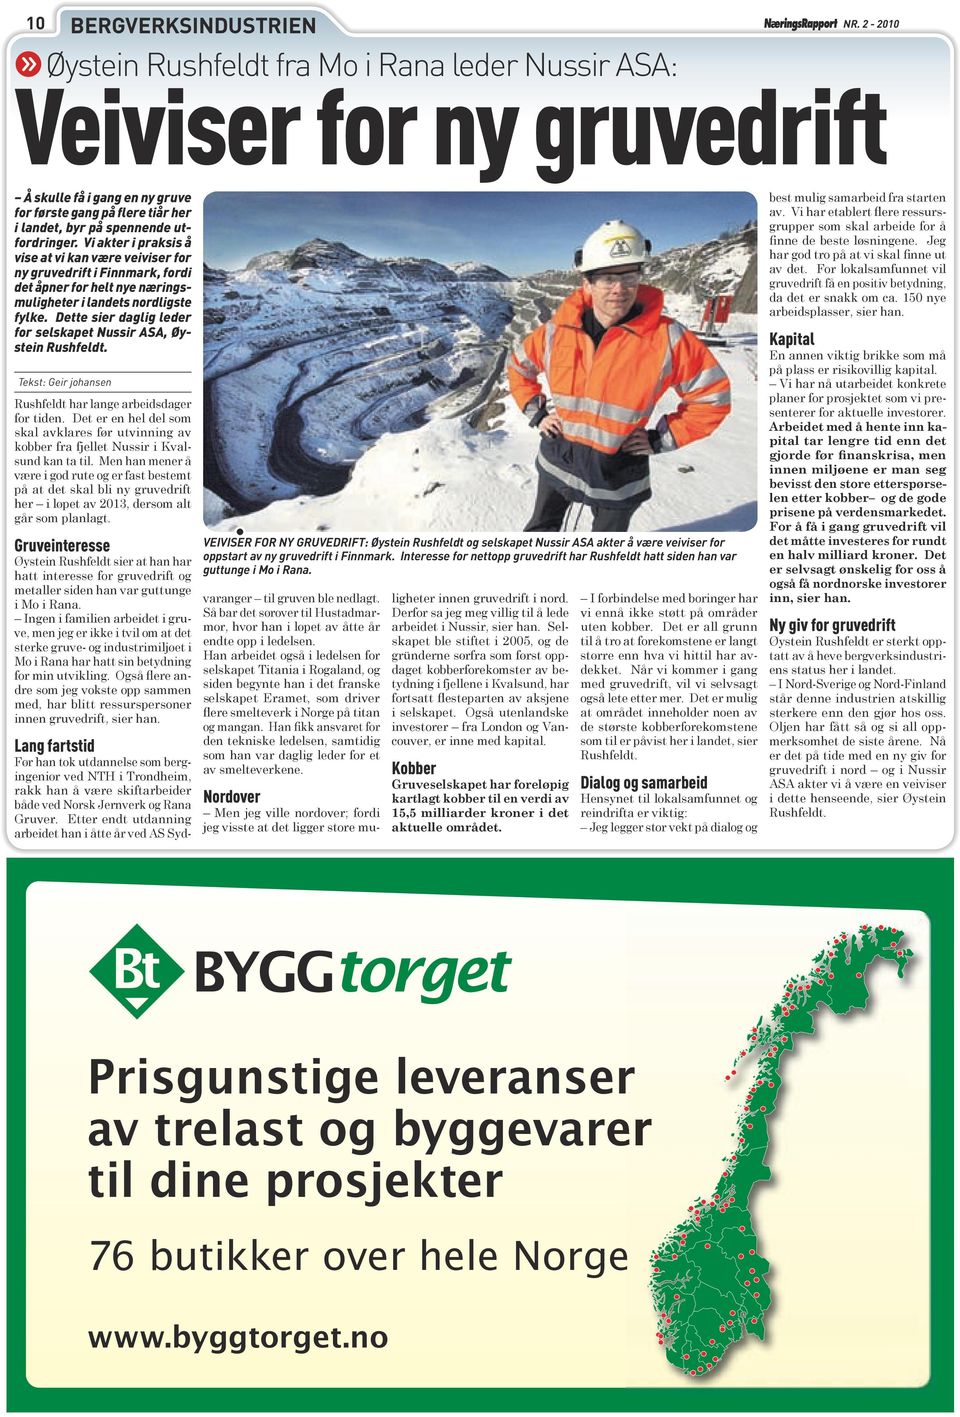 Vi akter i praksis å vise at vi kan være veiviser for ny gruvedrift i Finnmark, fordi det åpner for helt nye næringsmuligheter i landets nordligste fylke.